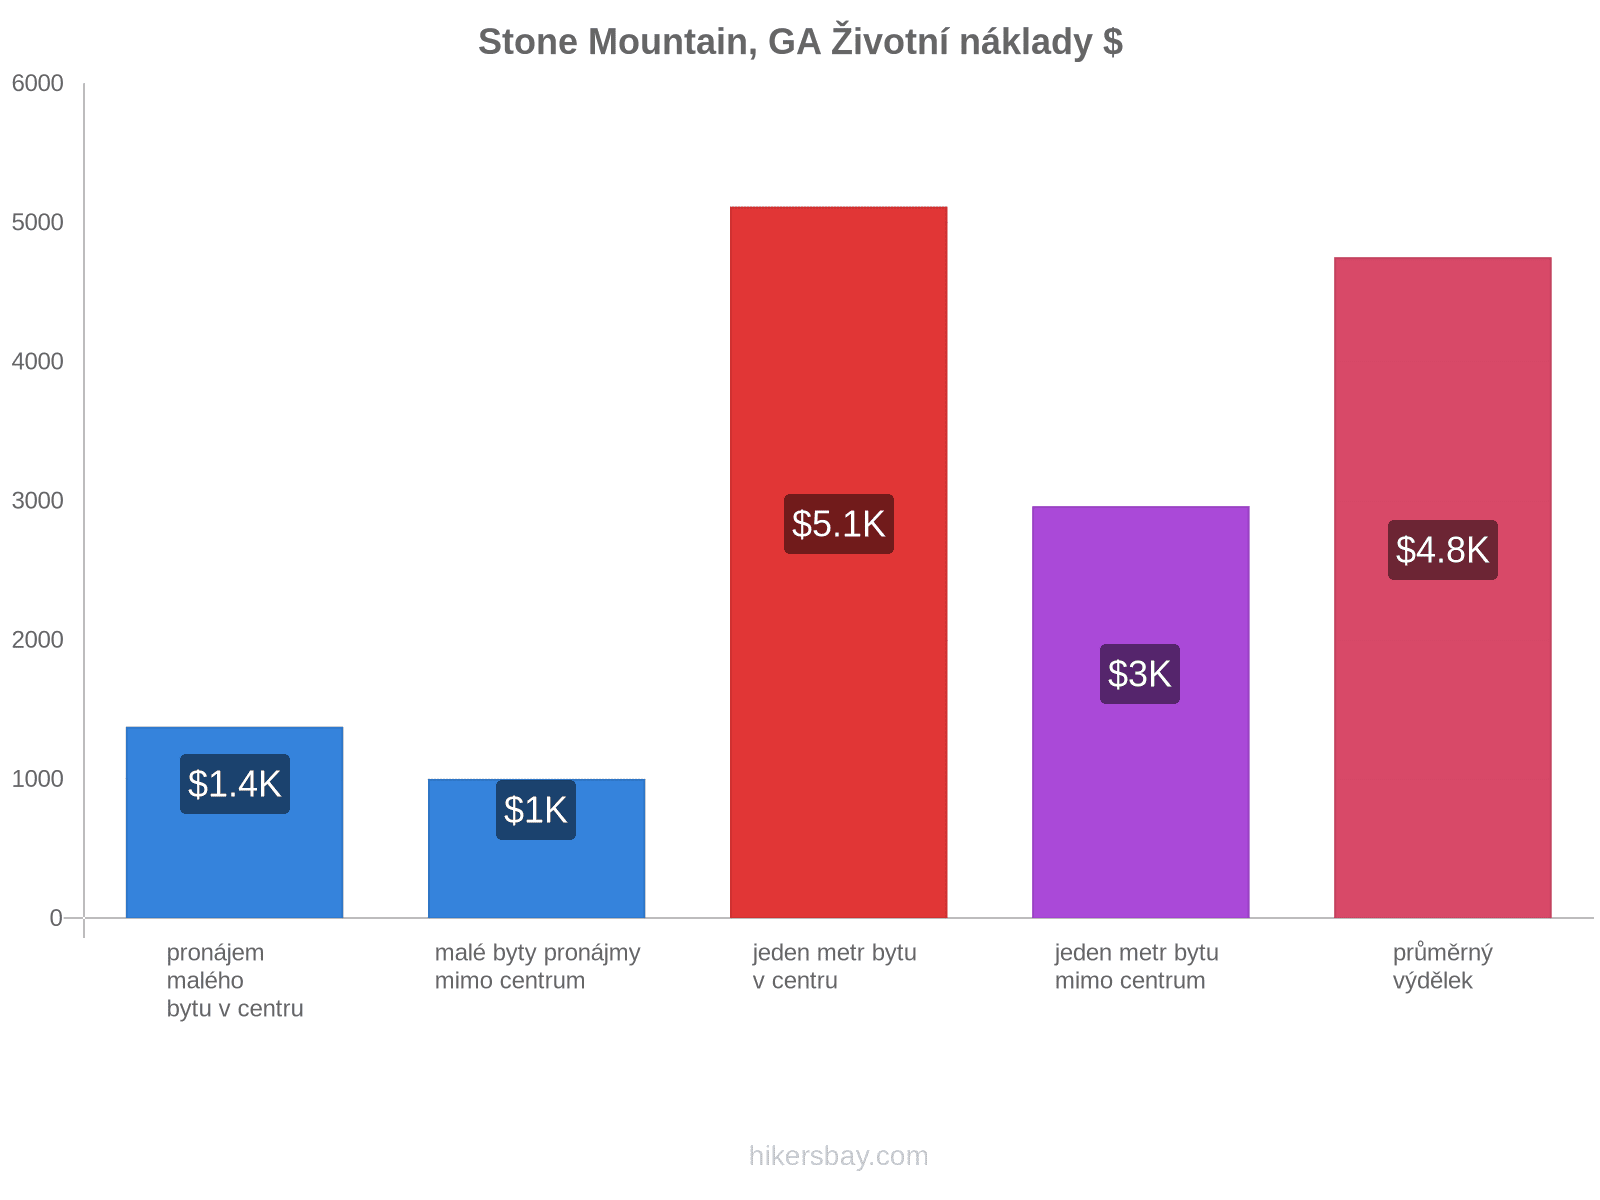 Stone Mountain, GA životní náklady hikersbay.com